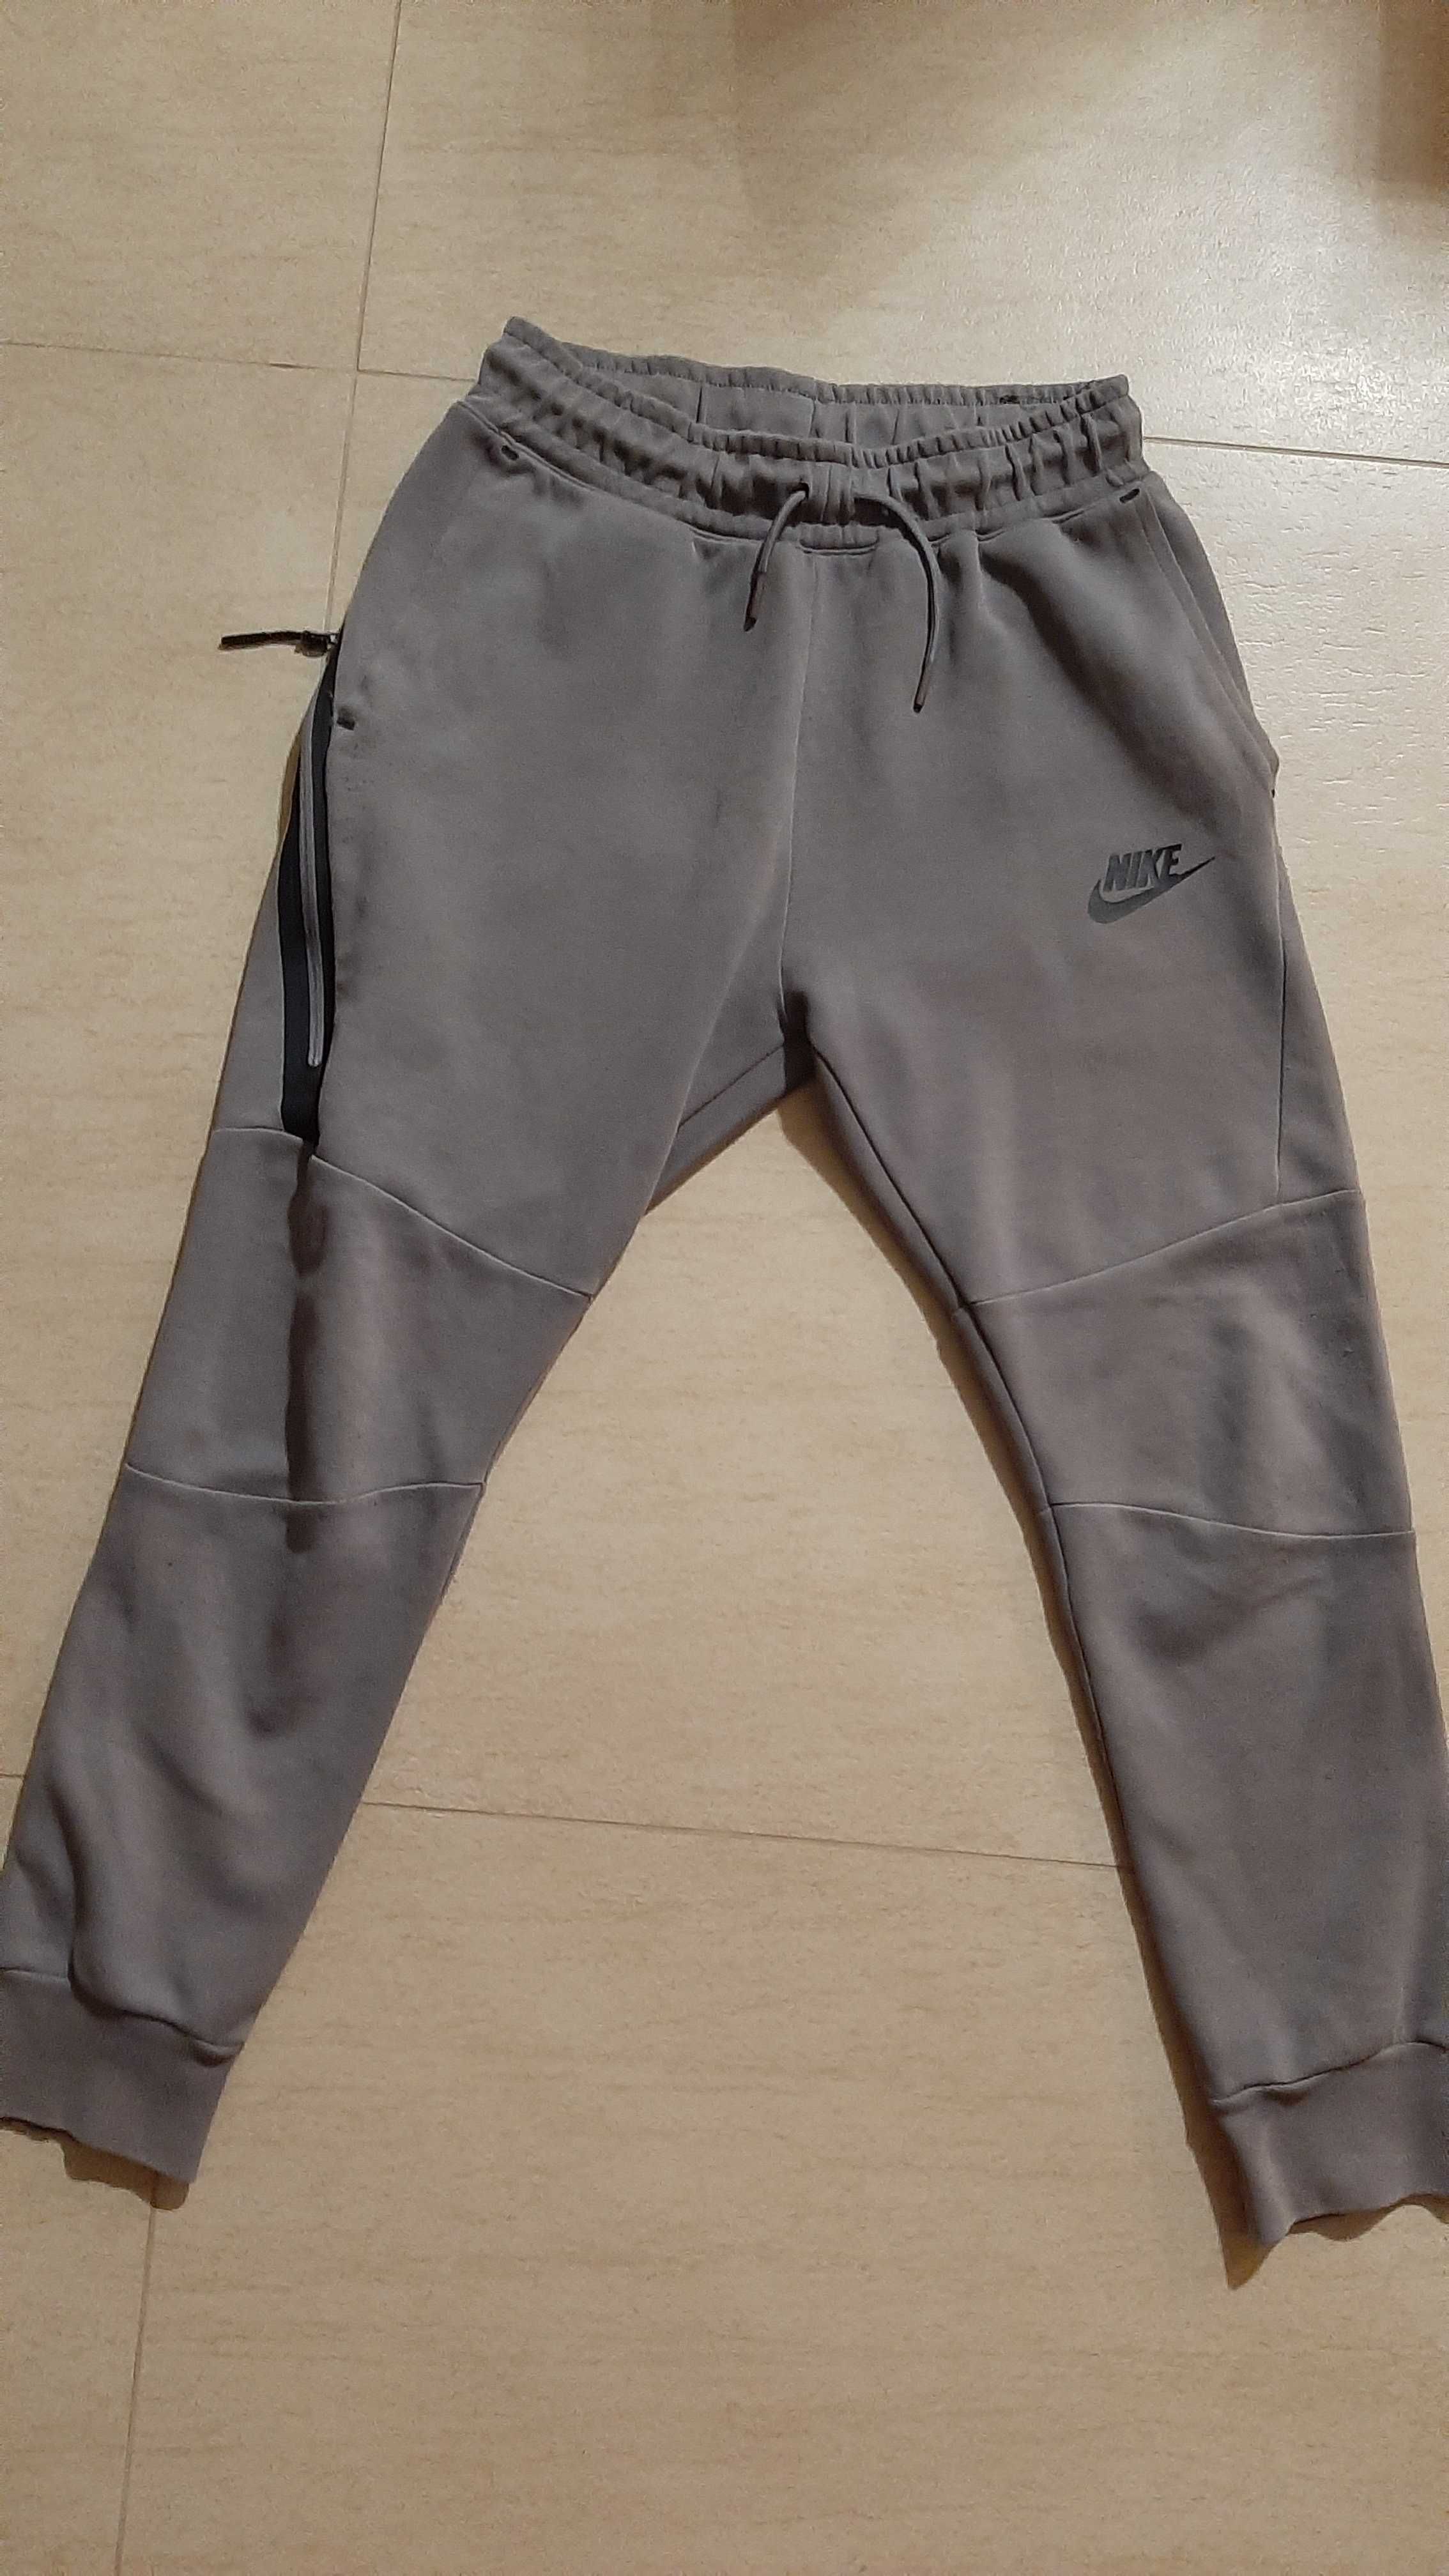 Spodnie chłopięce Nike sportswear tech fleece 023 rozm. 137-147 M